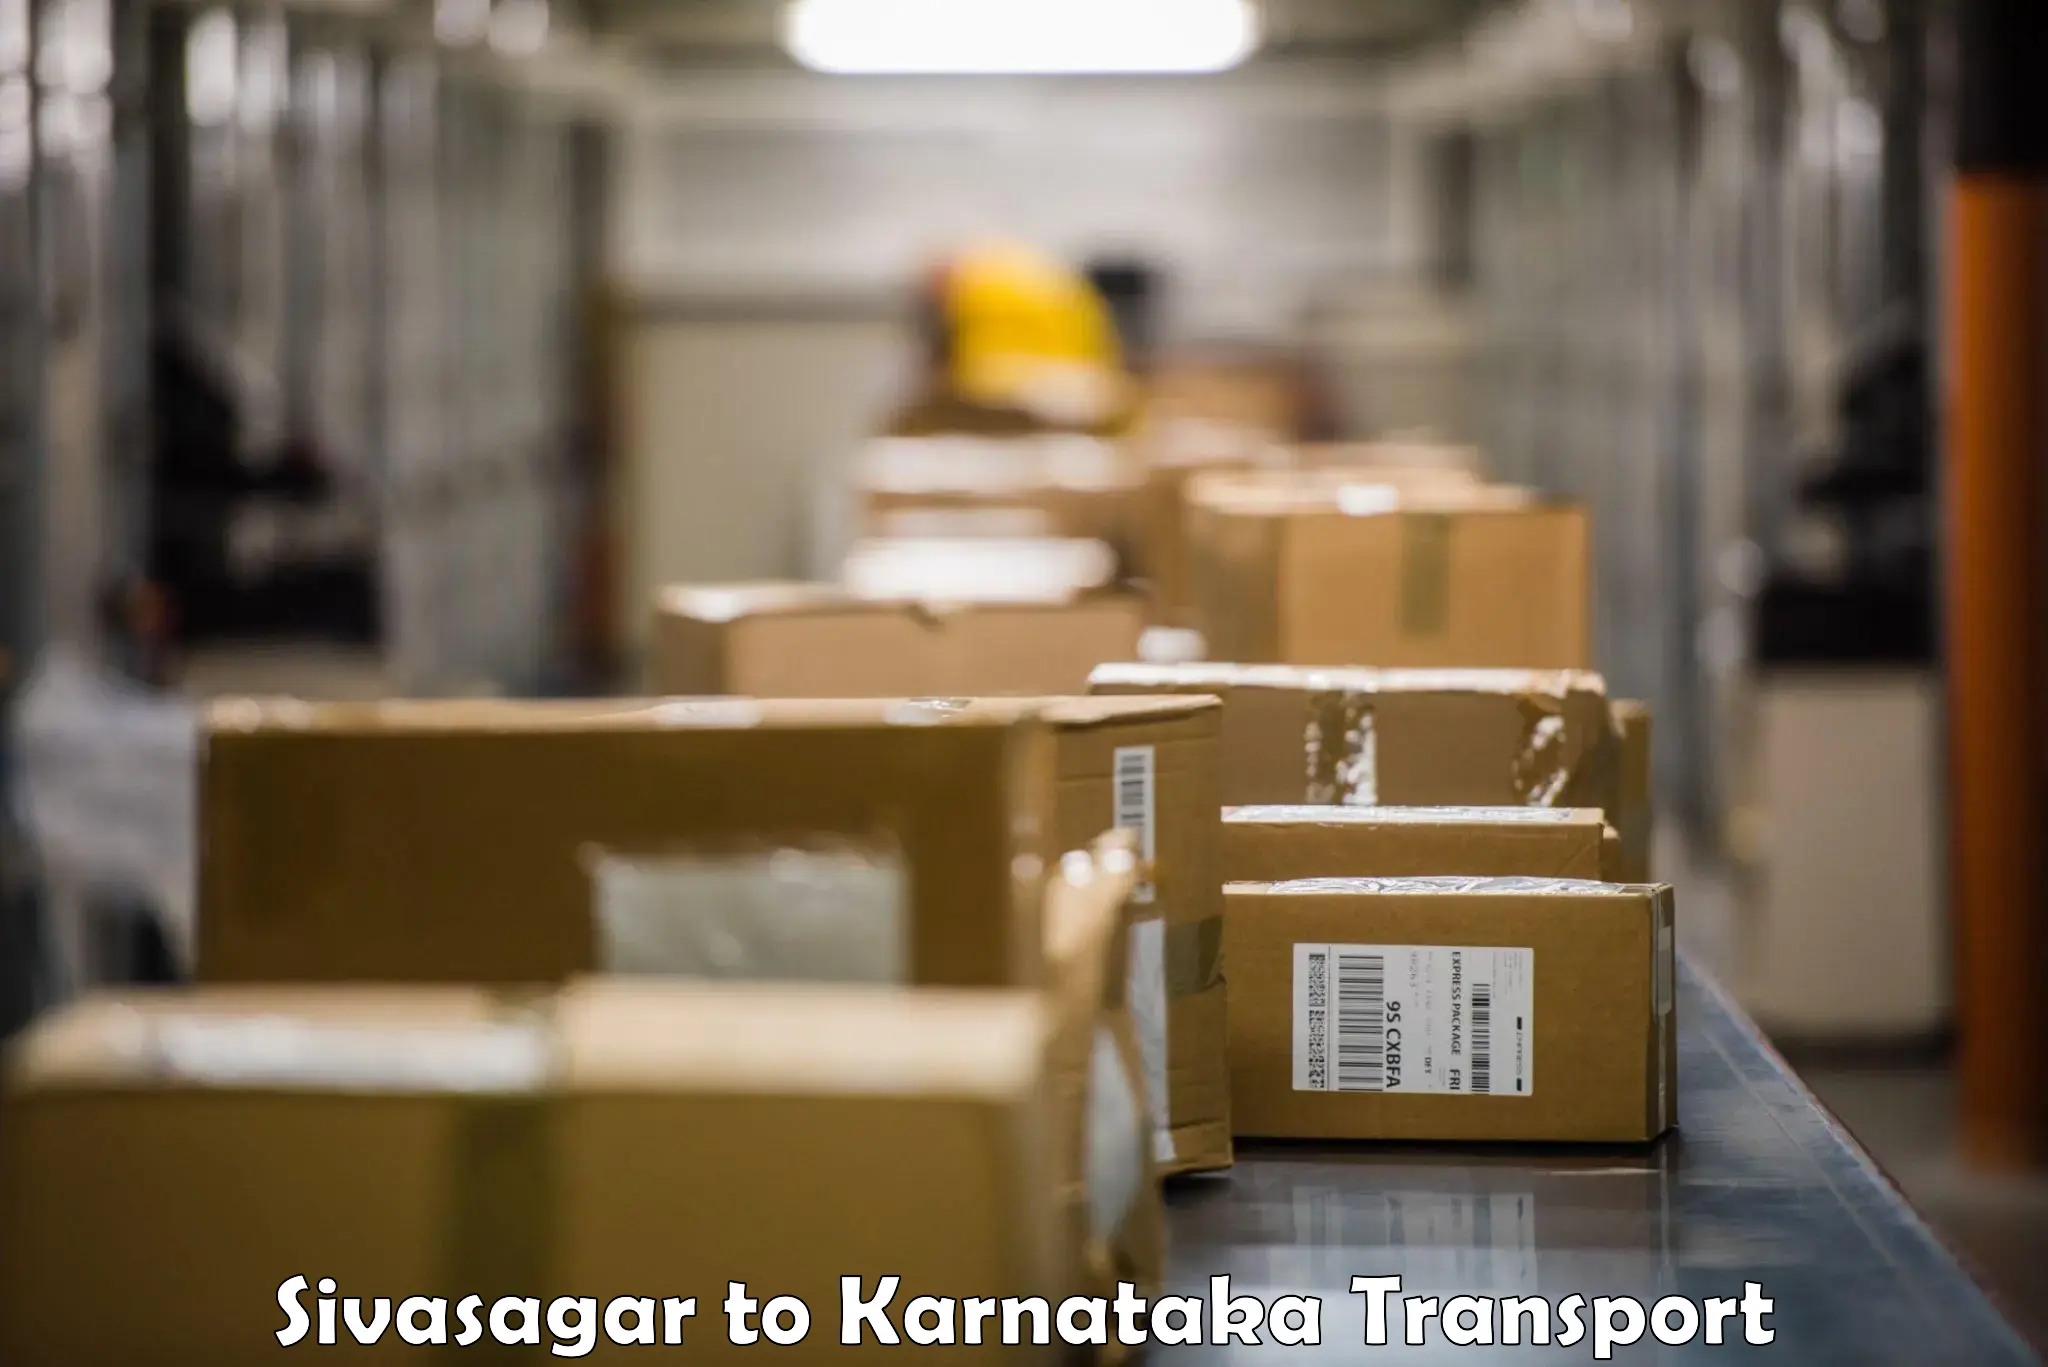 Shipping services Sivasagar to Bailhongal